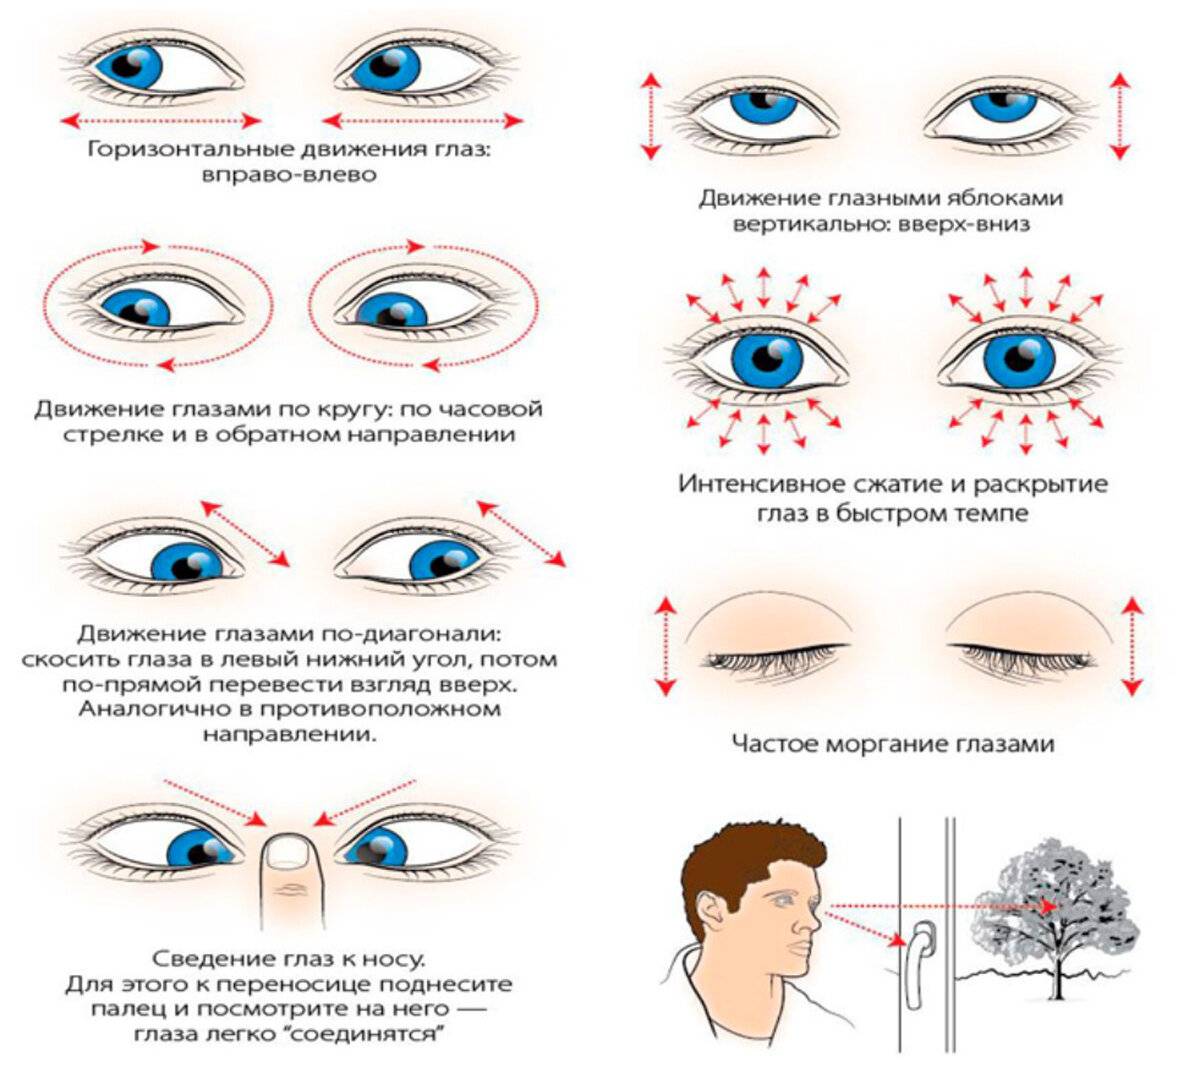 Урок 5. комплексы упражнений для ежедневной тренировки и профилактики зрения